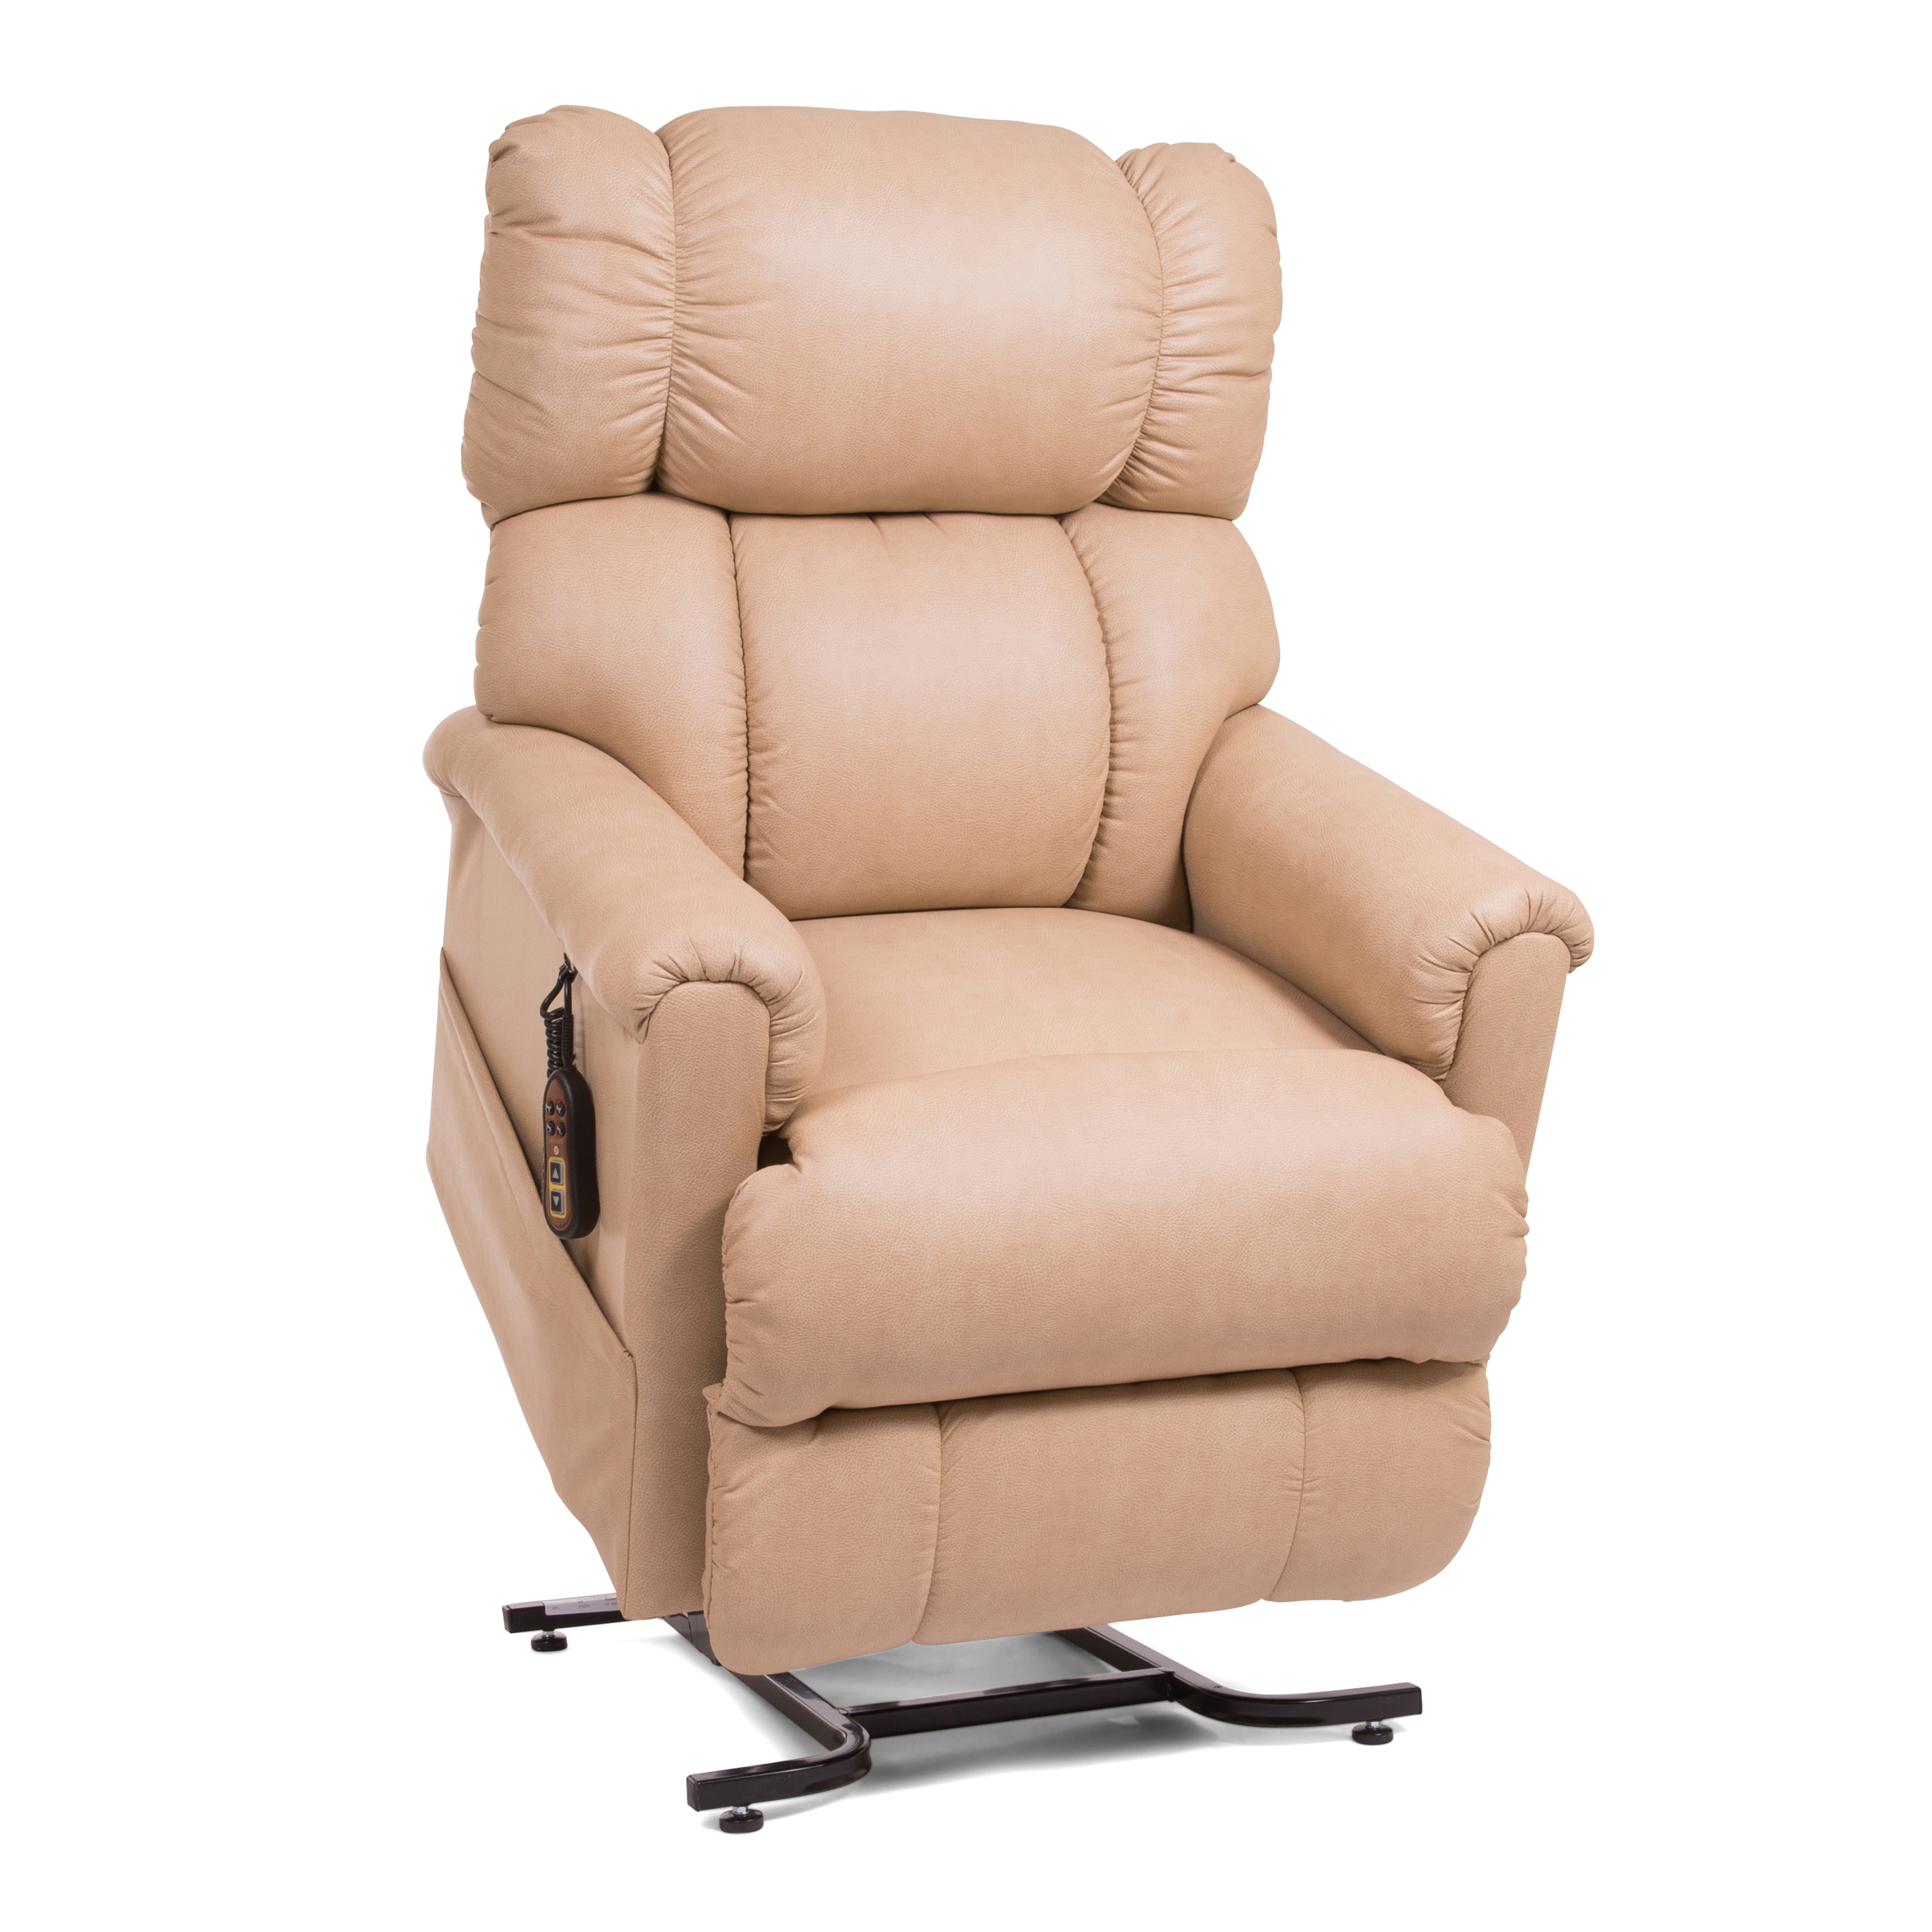 Golden Tech Imperial PR404 3-Position Lift Chair